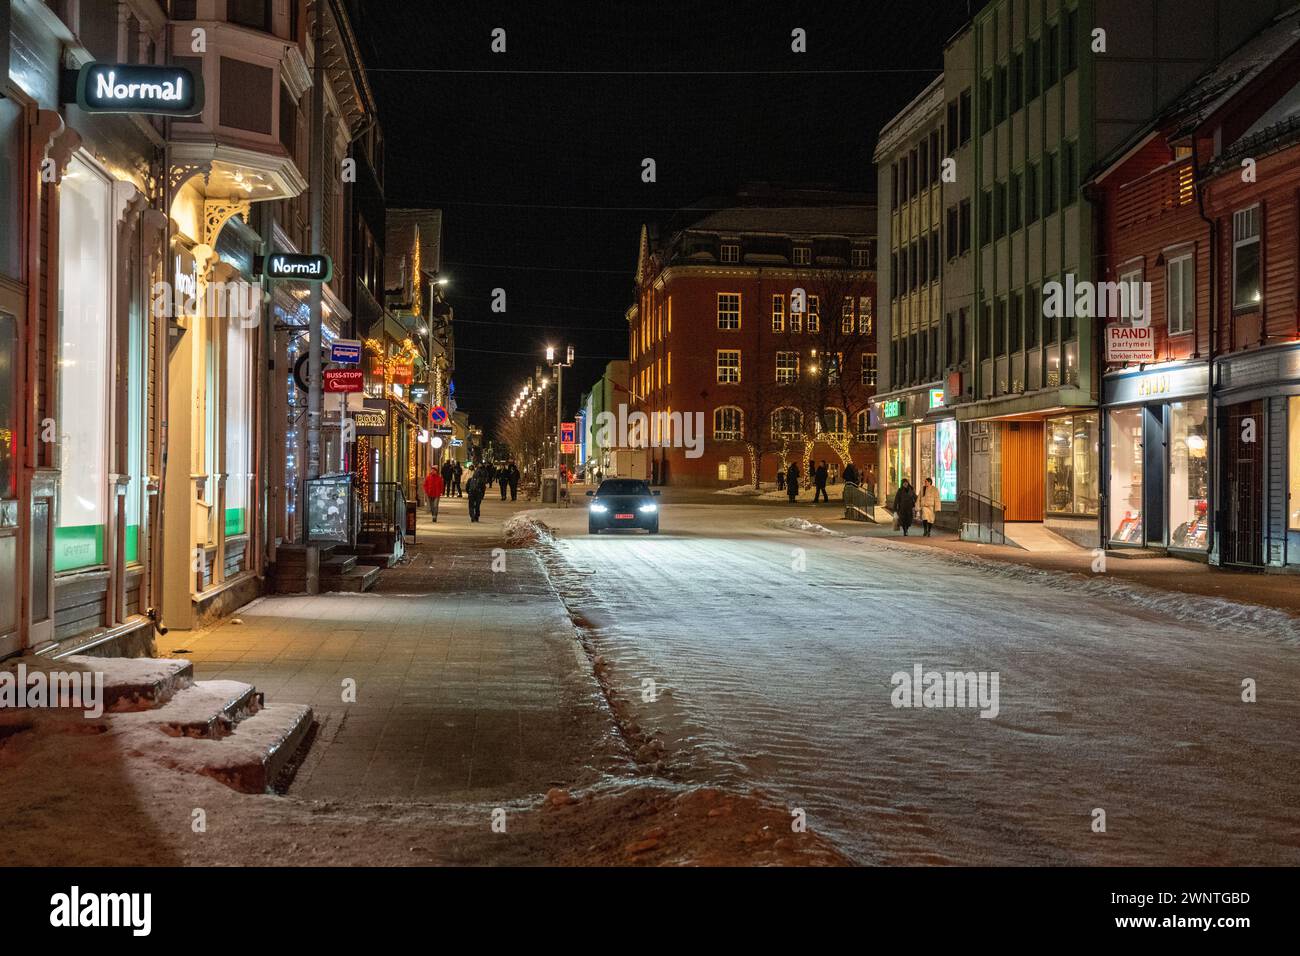 Scène de rue nocturne de la rue principale à Tromso, avec la rue couverte de neige et une voiture conduisant vers le bas avec des piétons sur les promenades latérales. Banque D'Images